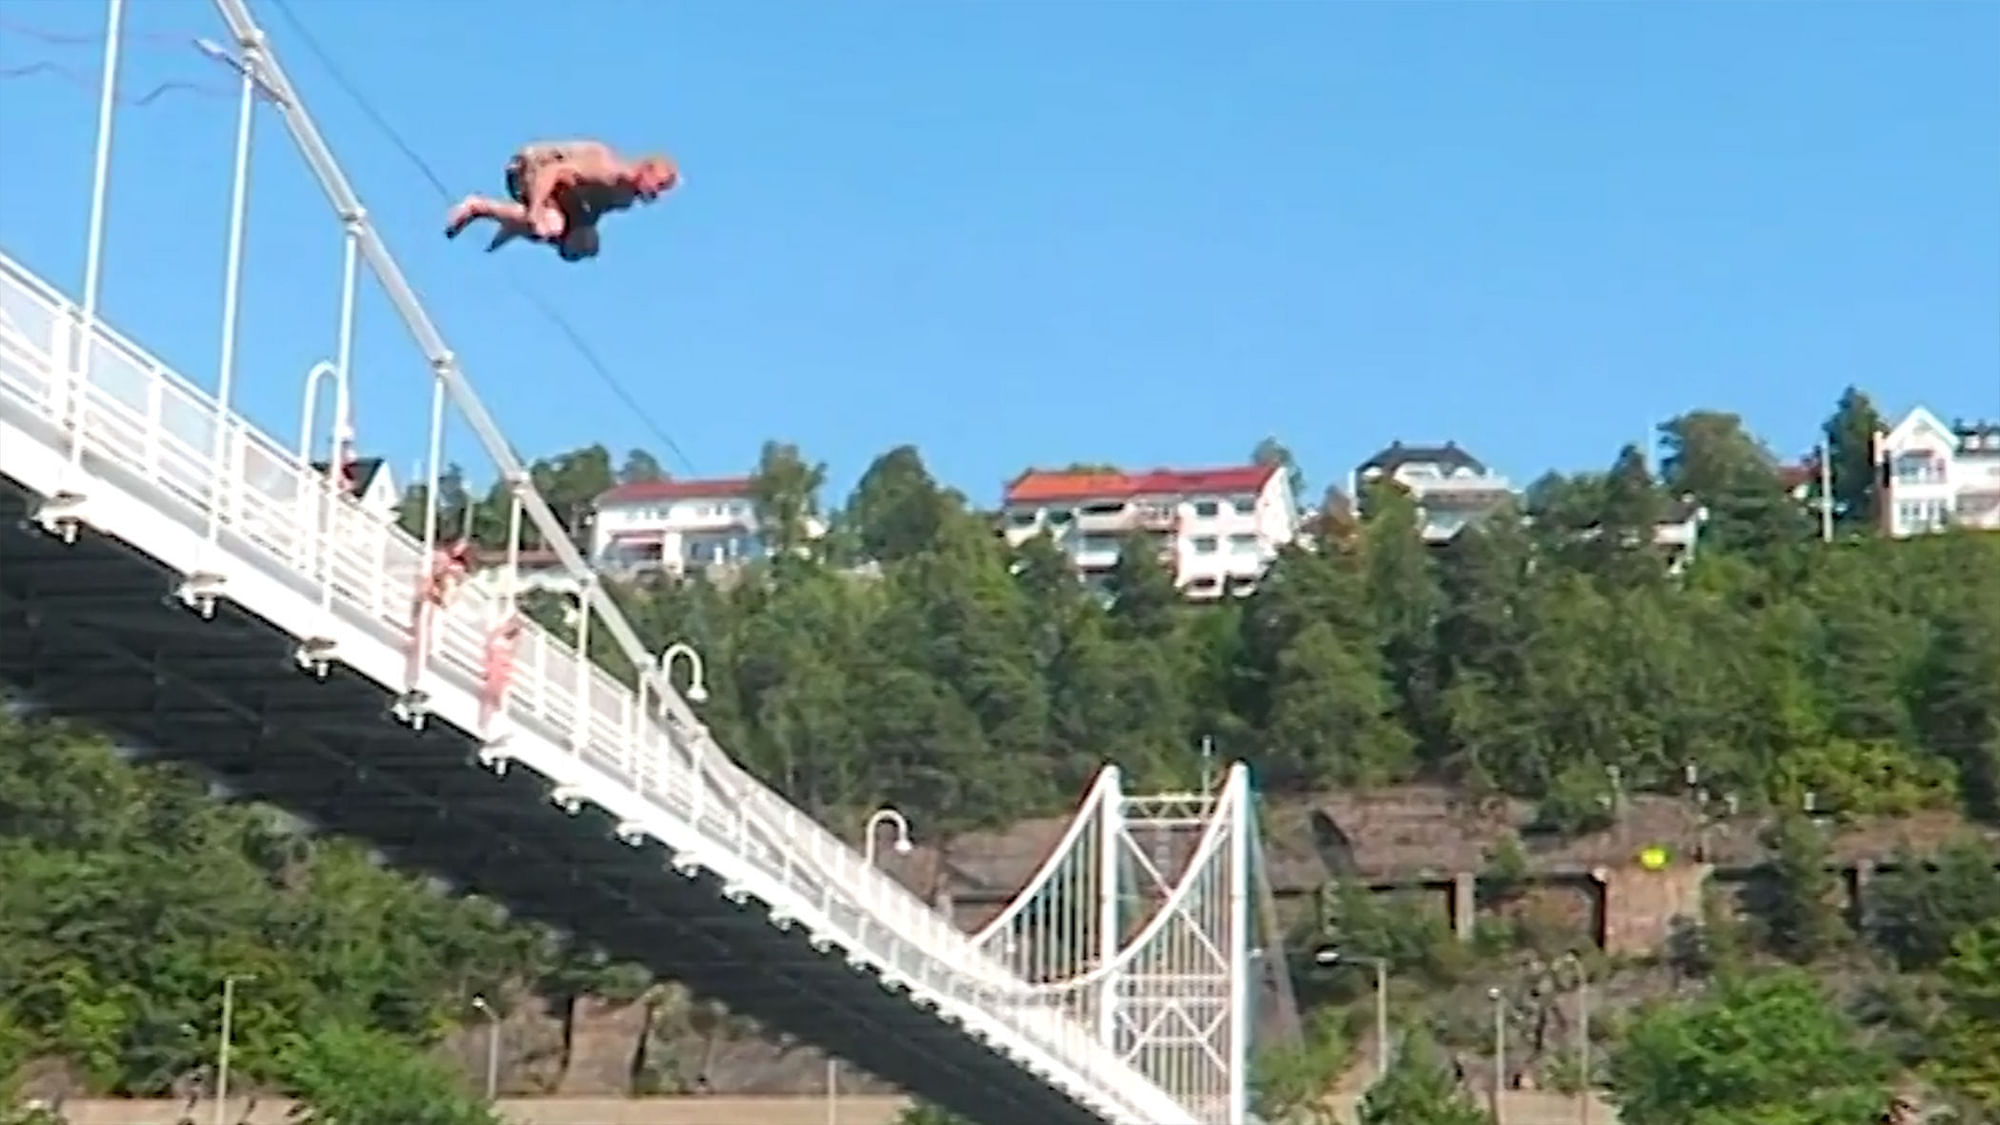 Adrenaline freaks swinging off a bridge in Oslo, Norway. (Photo: AP/Caters News screengrab)